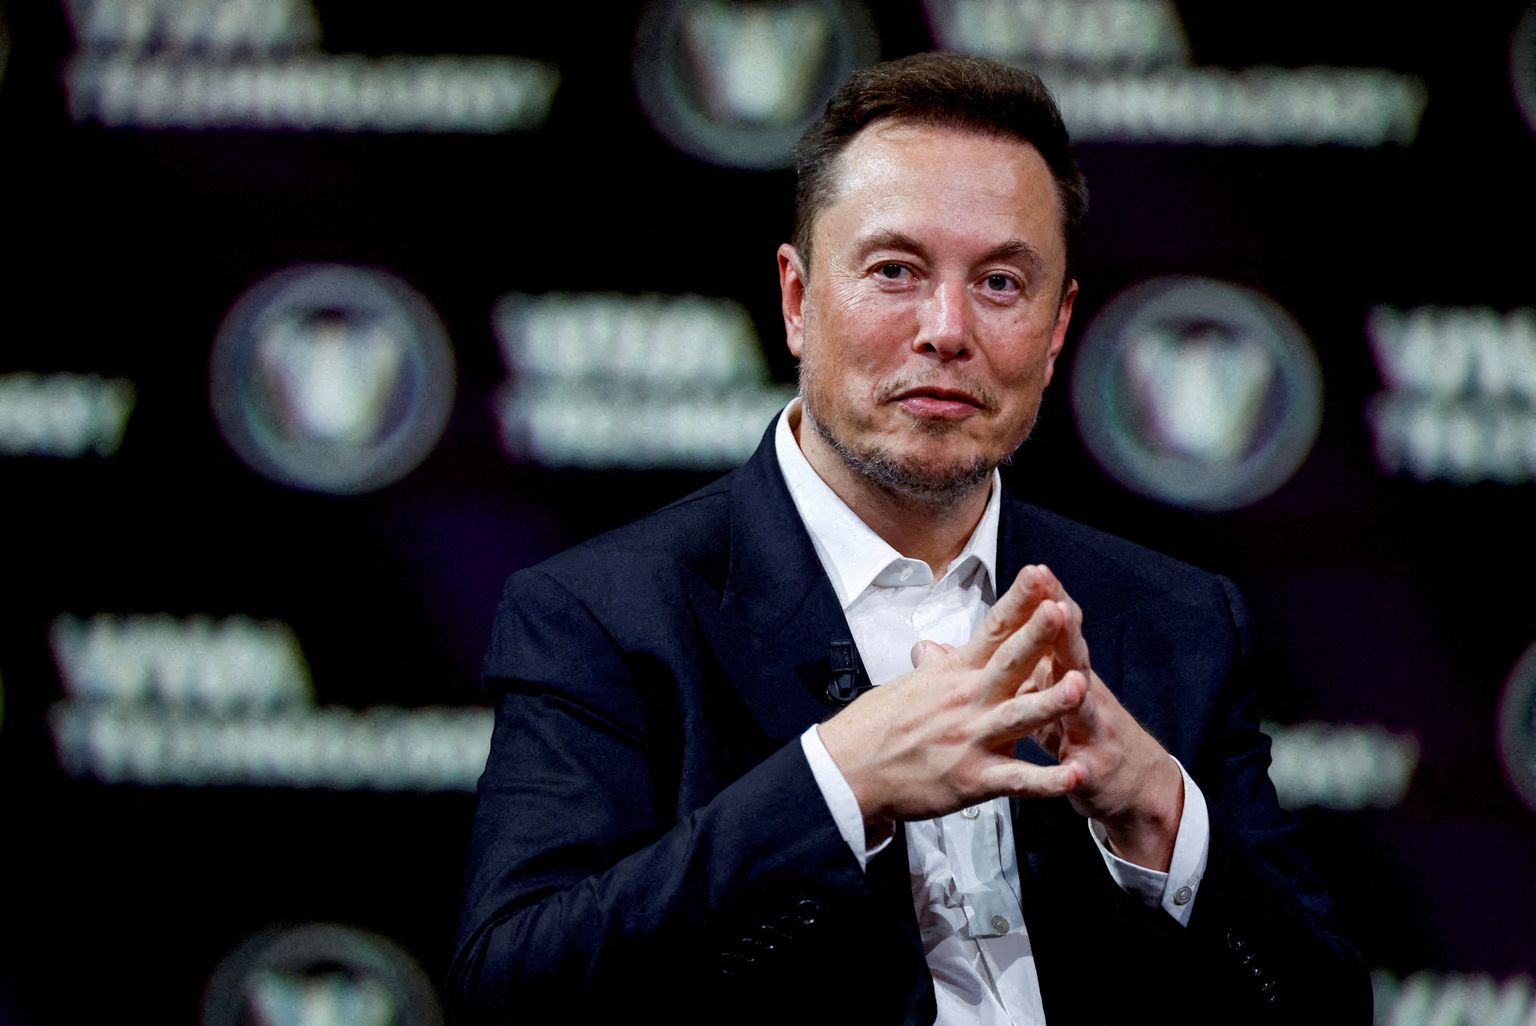 Tehnoloogiaettevõtete SpaceX, Tesla ja X (Twitter) tegevjuht Elon Musk.